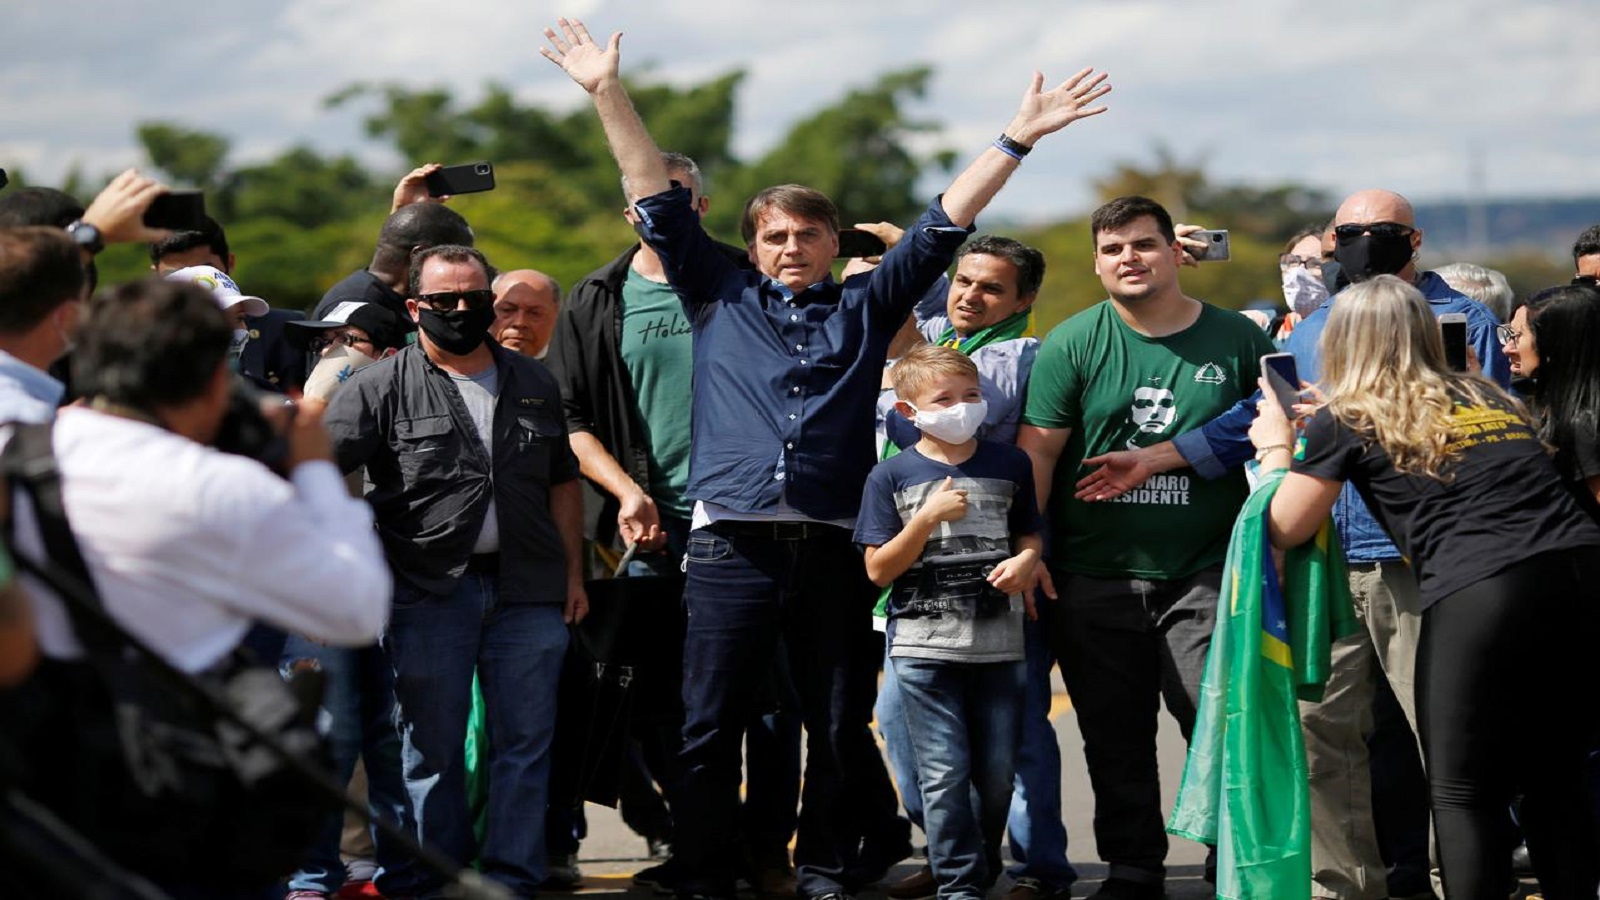 الرئيس البرازيلي يحيي أنصاره الغاضبين في تظاهرة ضد إجراءات الإغلاق